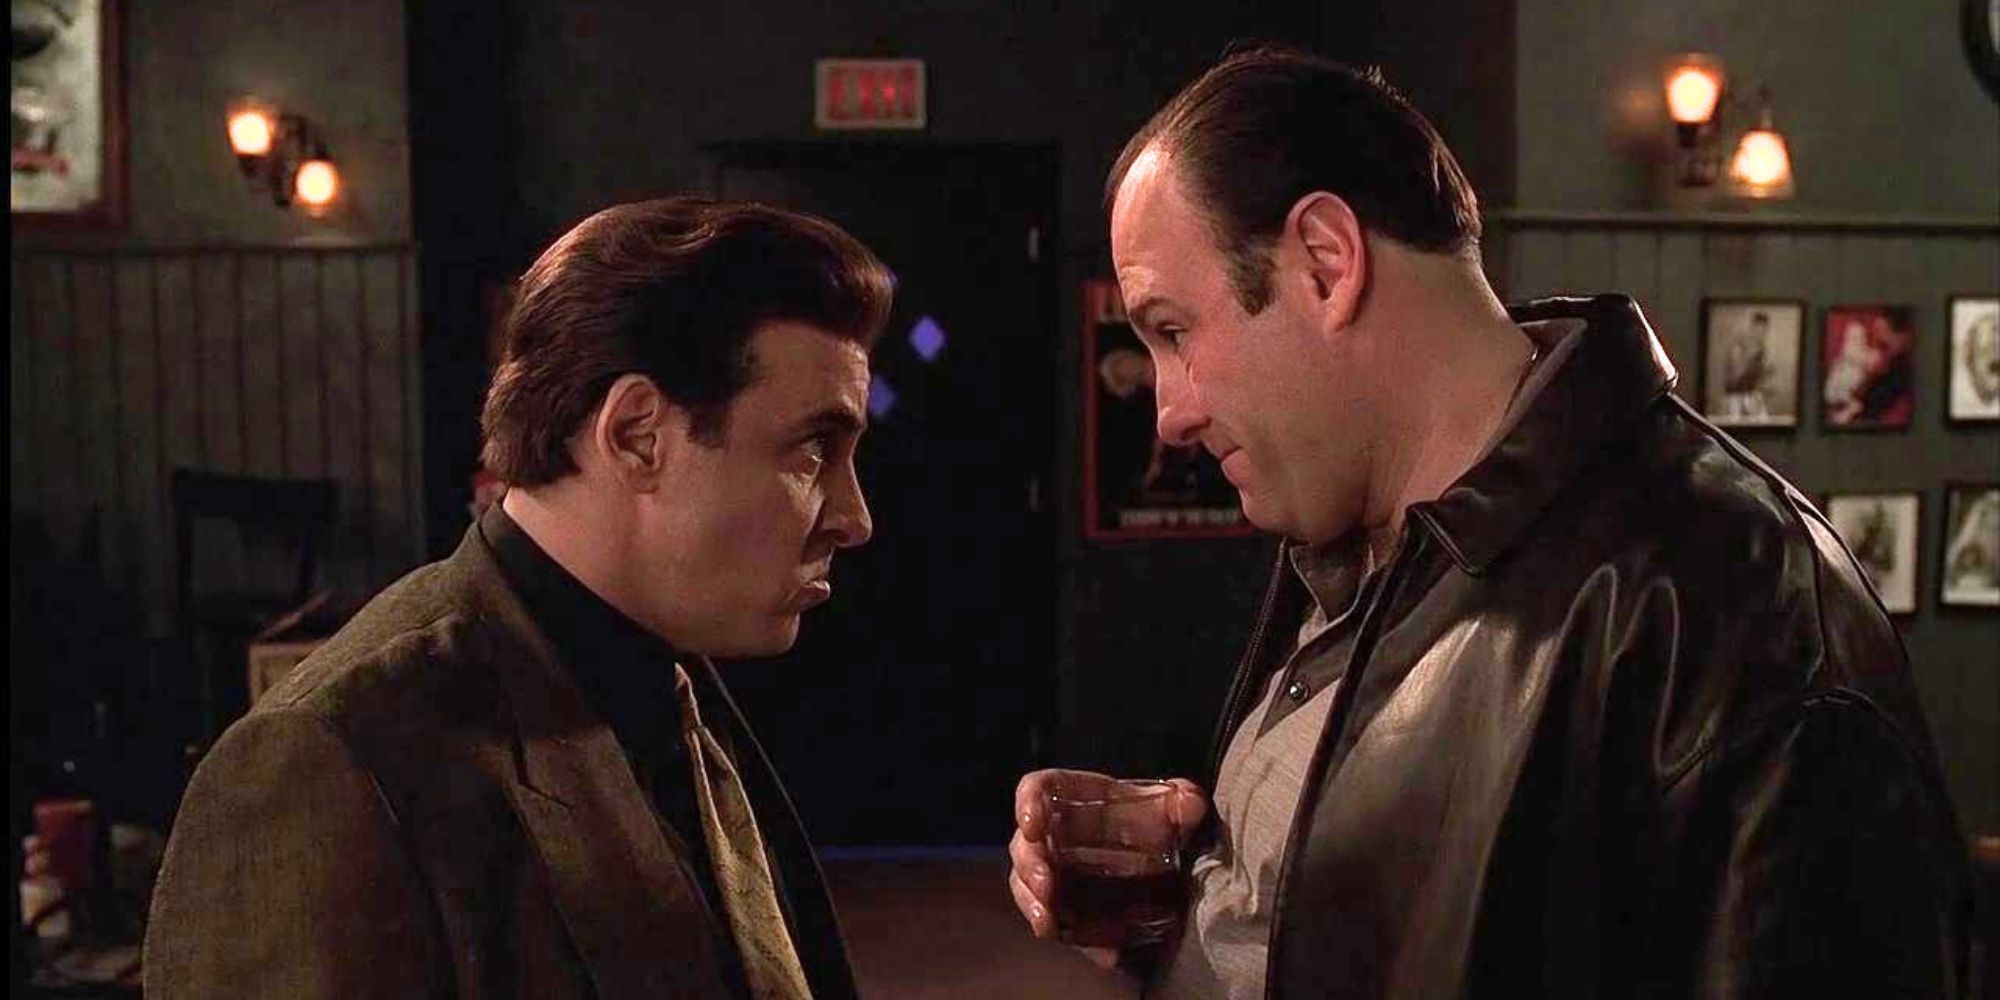 Steven Van Zandt talking with James Gandolfini in The Sopranos